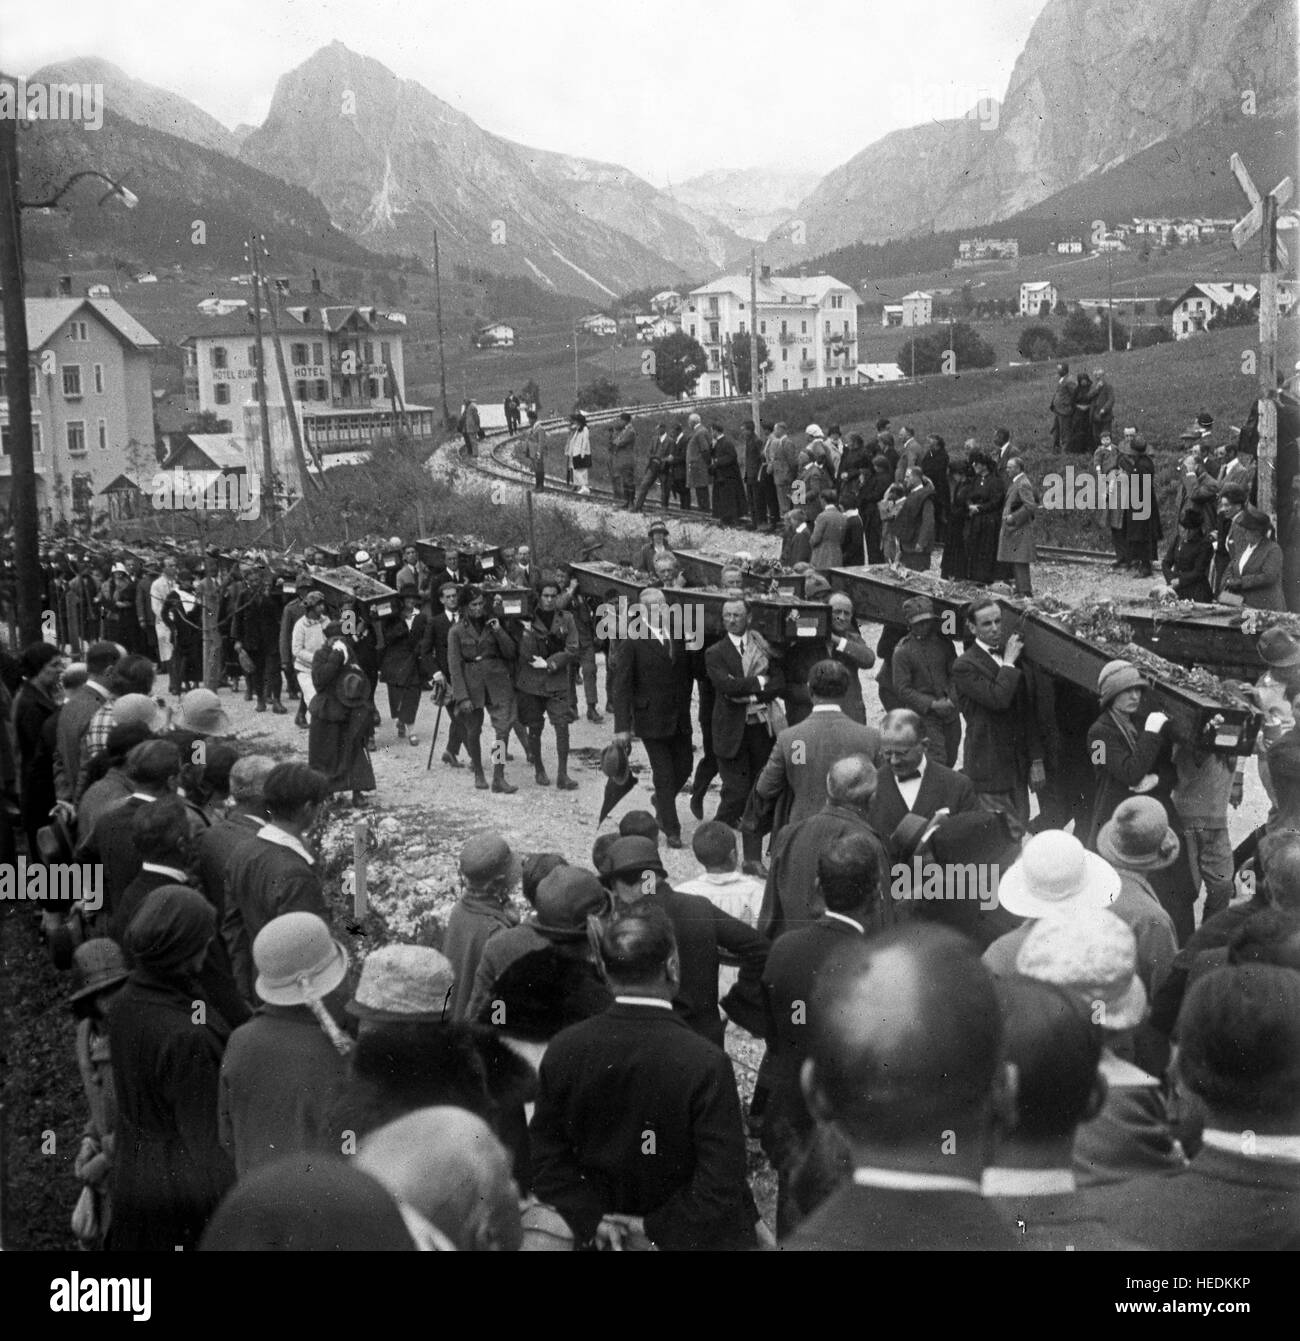 Cortina d'Apezzo Italie 1921 funérailles de masse corps de soldats italiens récupérés dans des tombes alpines après la grande guerre Banque D'Images